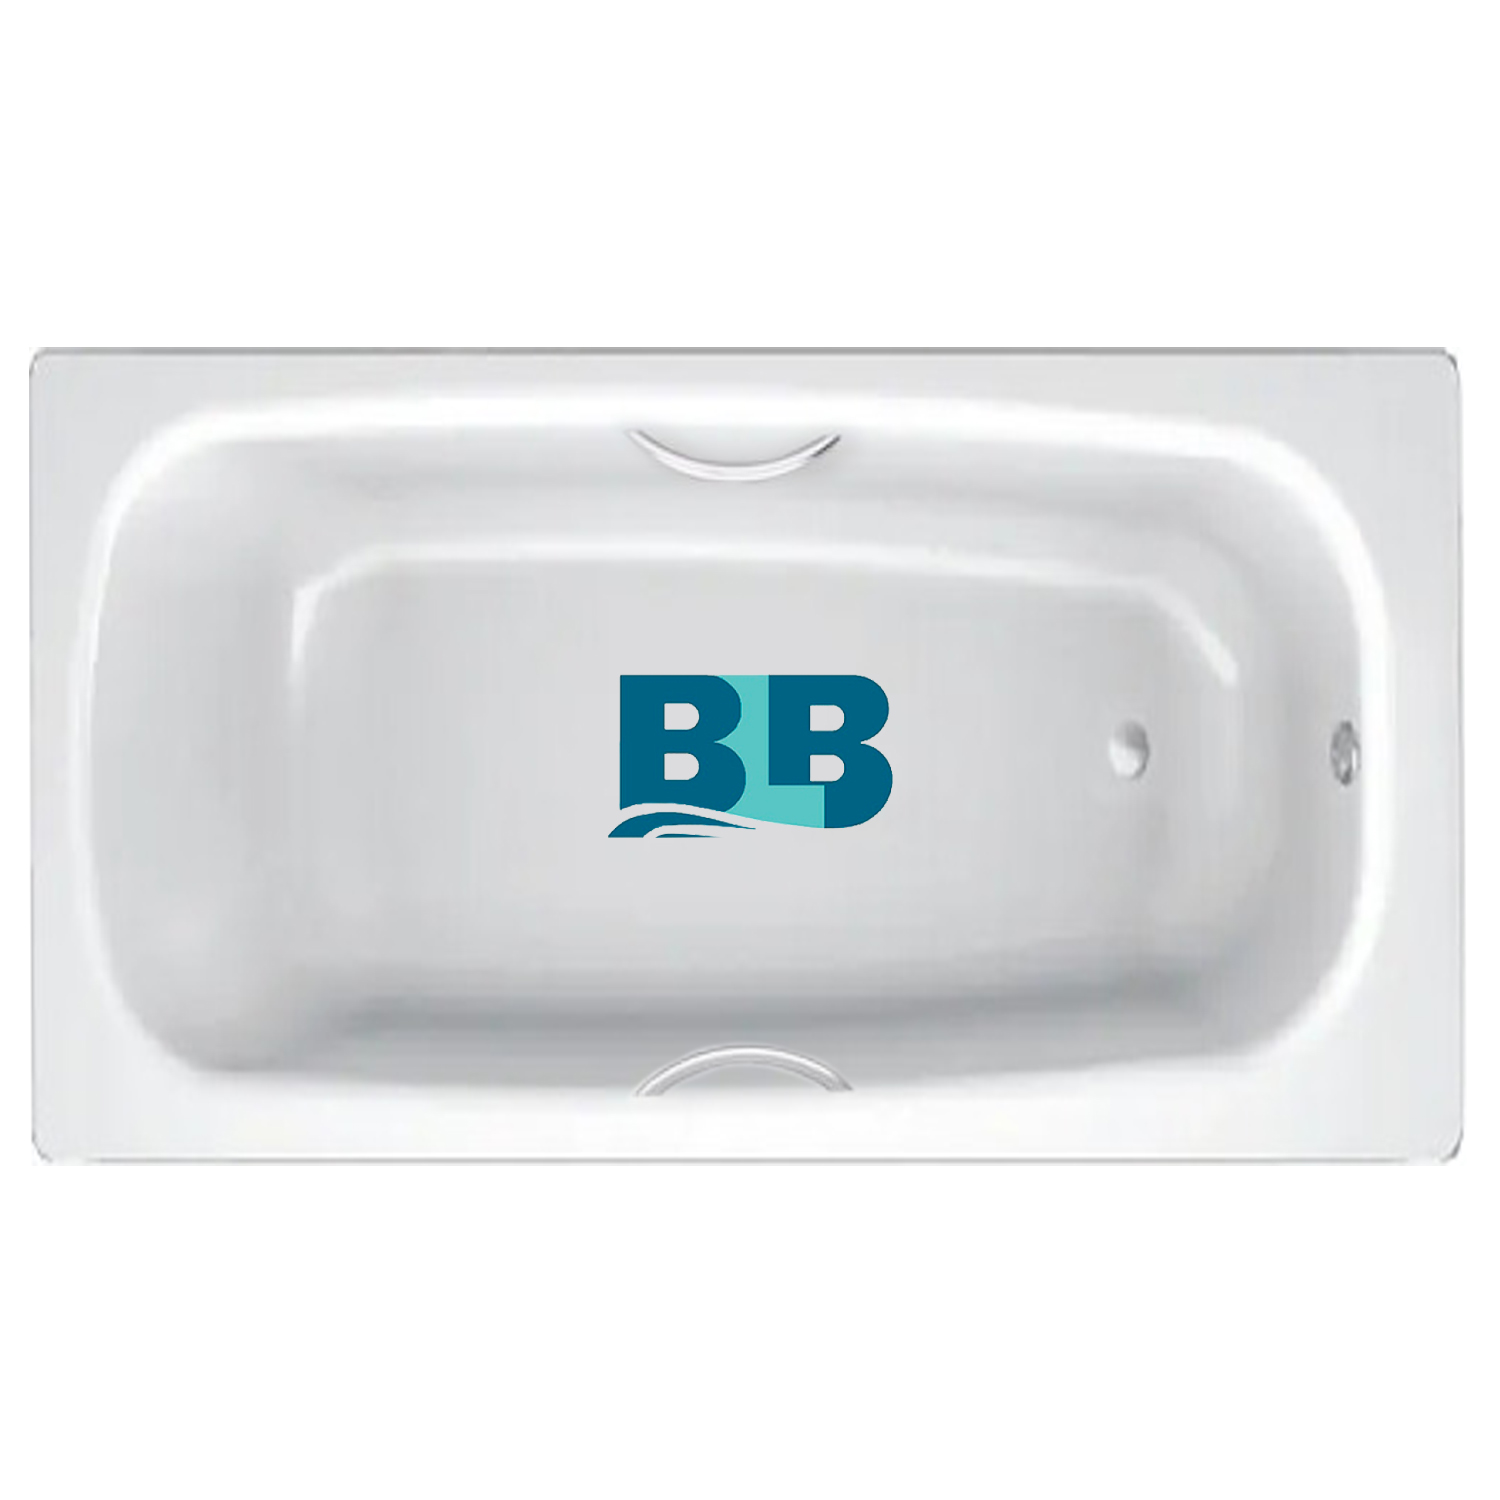 BLB apmstdbl1. Ванна стальная Universal HG BLB, С отверстиями для ручек. Код: 211310 стальная ванна BLB Universal b70h 170x70 см, с ножками apmstdbl1. Ванна стальная с ручками 150х75 и выступами. Стальная ванна blb hg